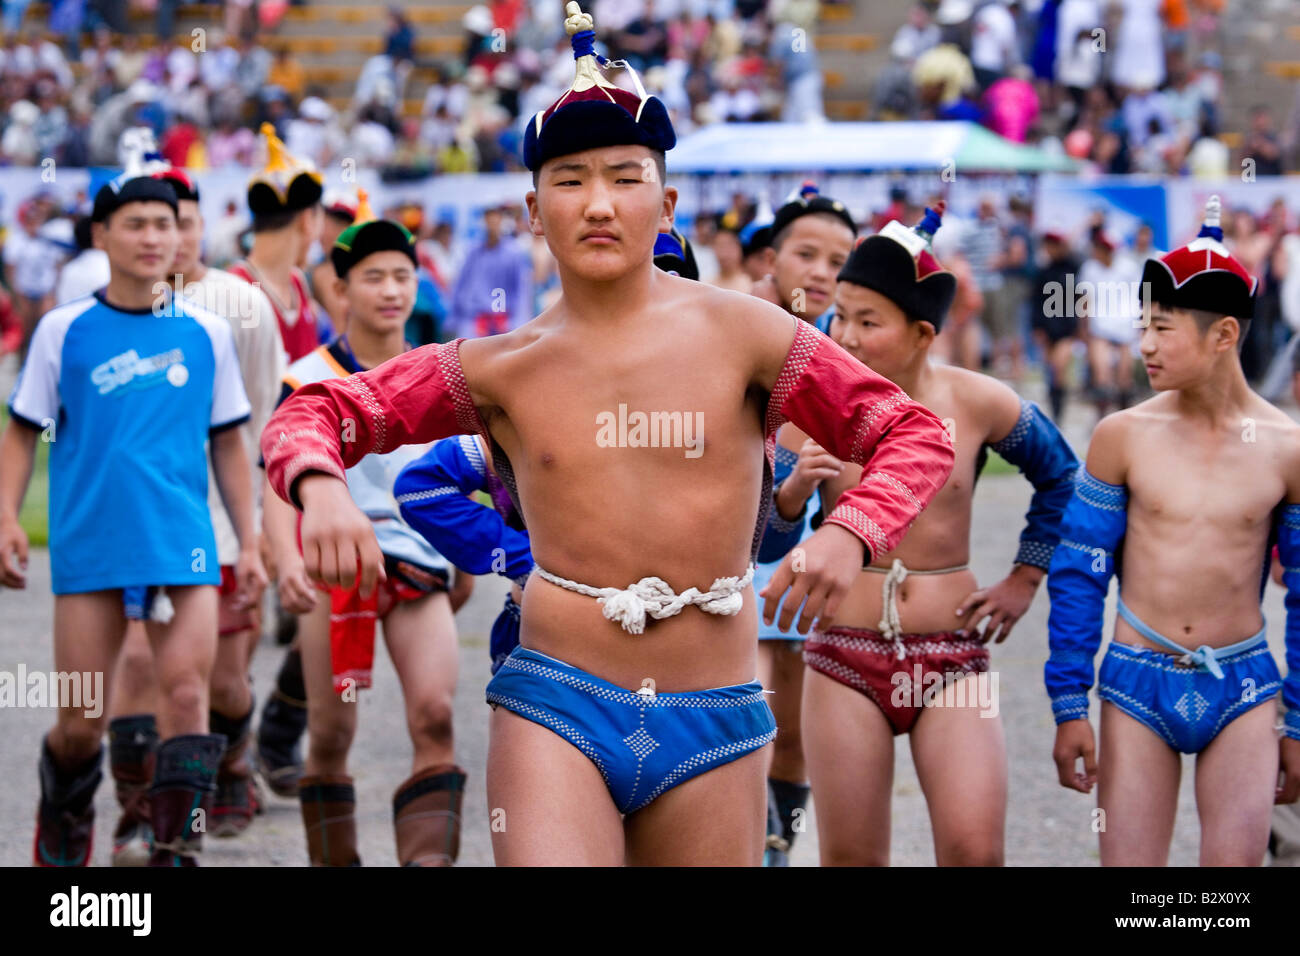 inicio-del-festival-de-naadam-celebrando-el-800-aniversario-del-estado-de-mongolia-en-el-estadio-nacional-de-jovenes-luchadores-b2x0yx.jpg